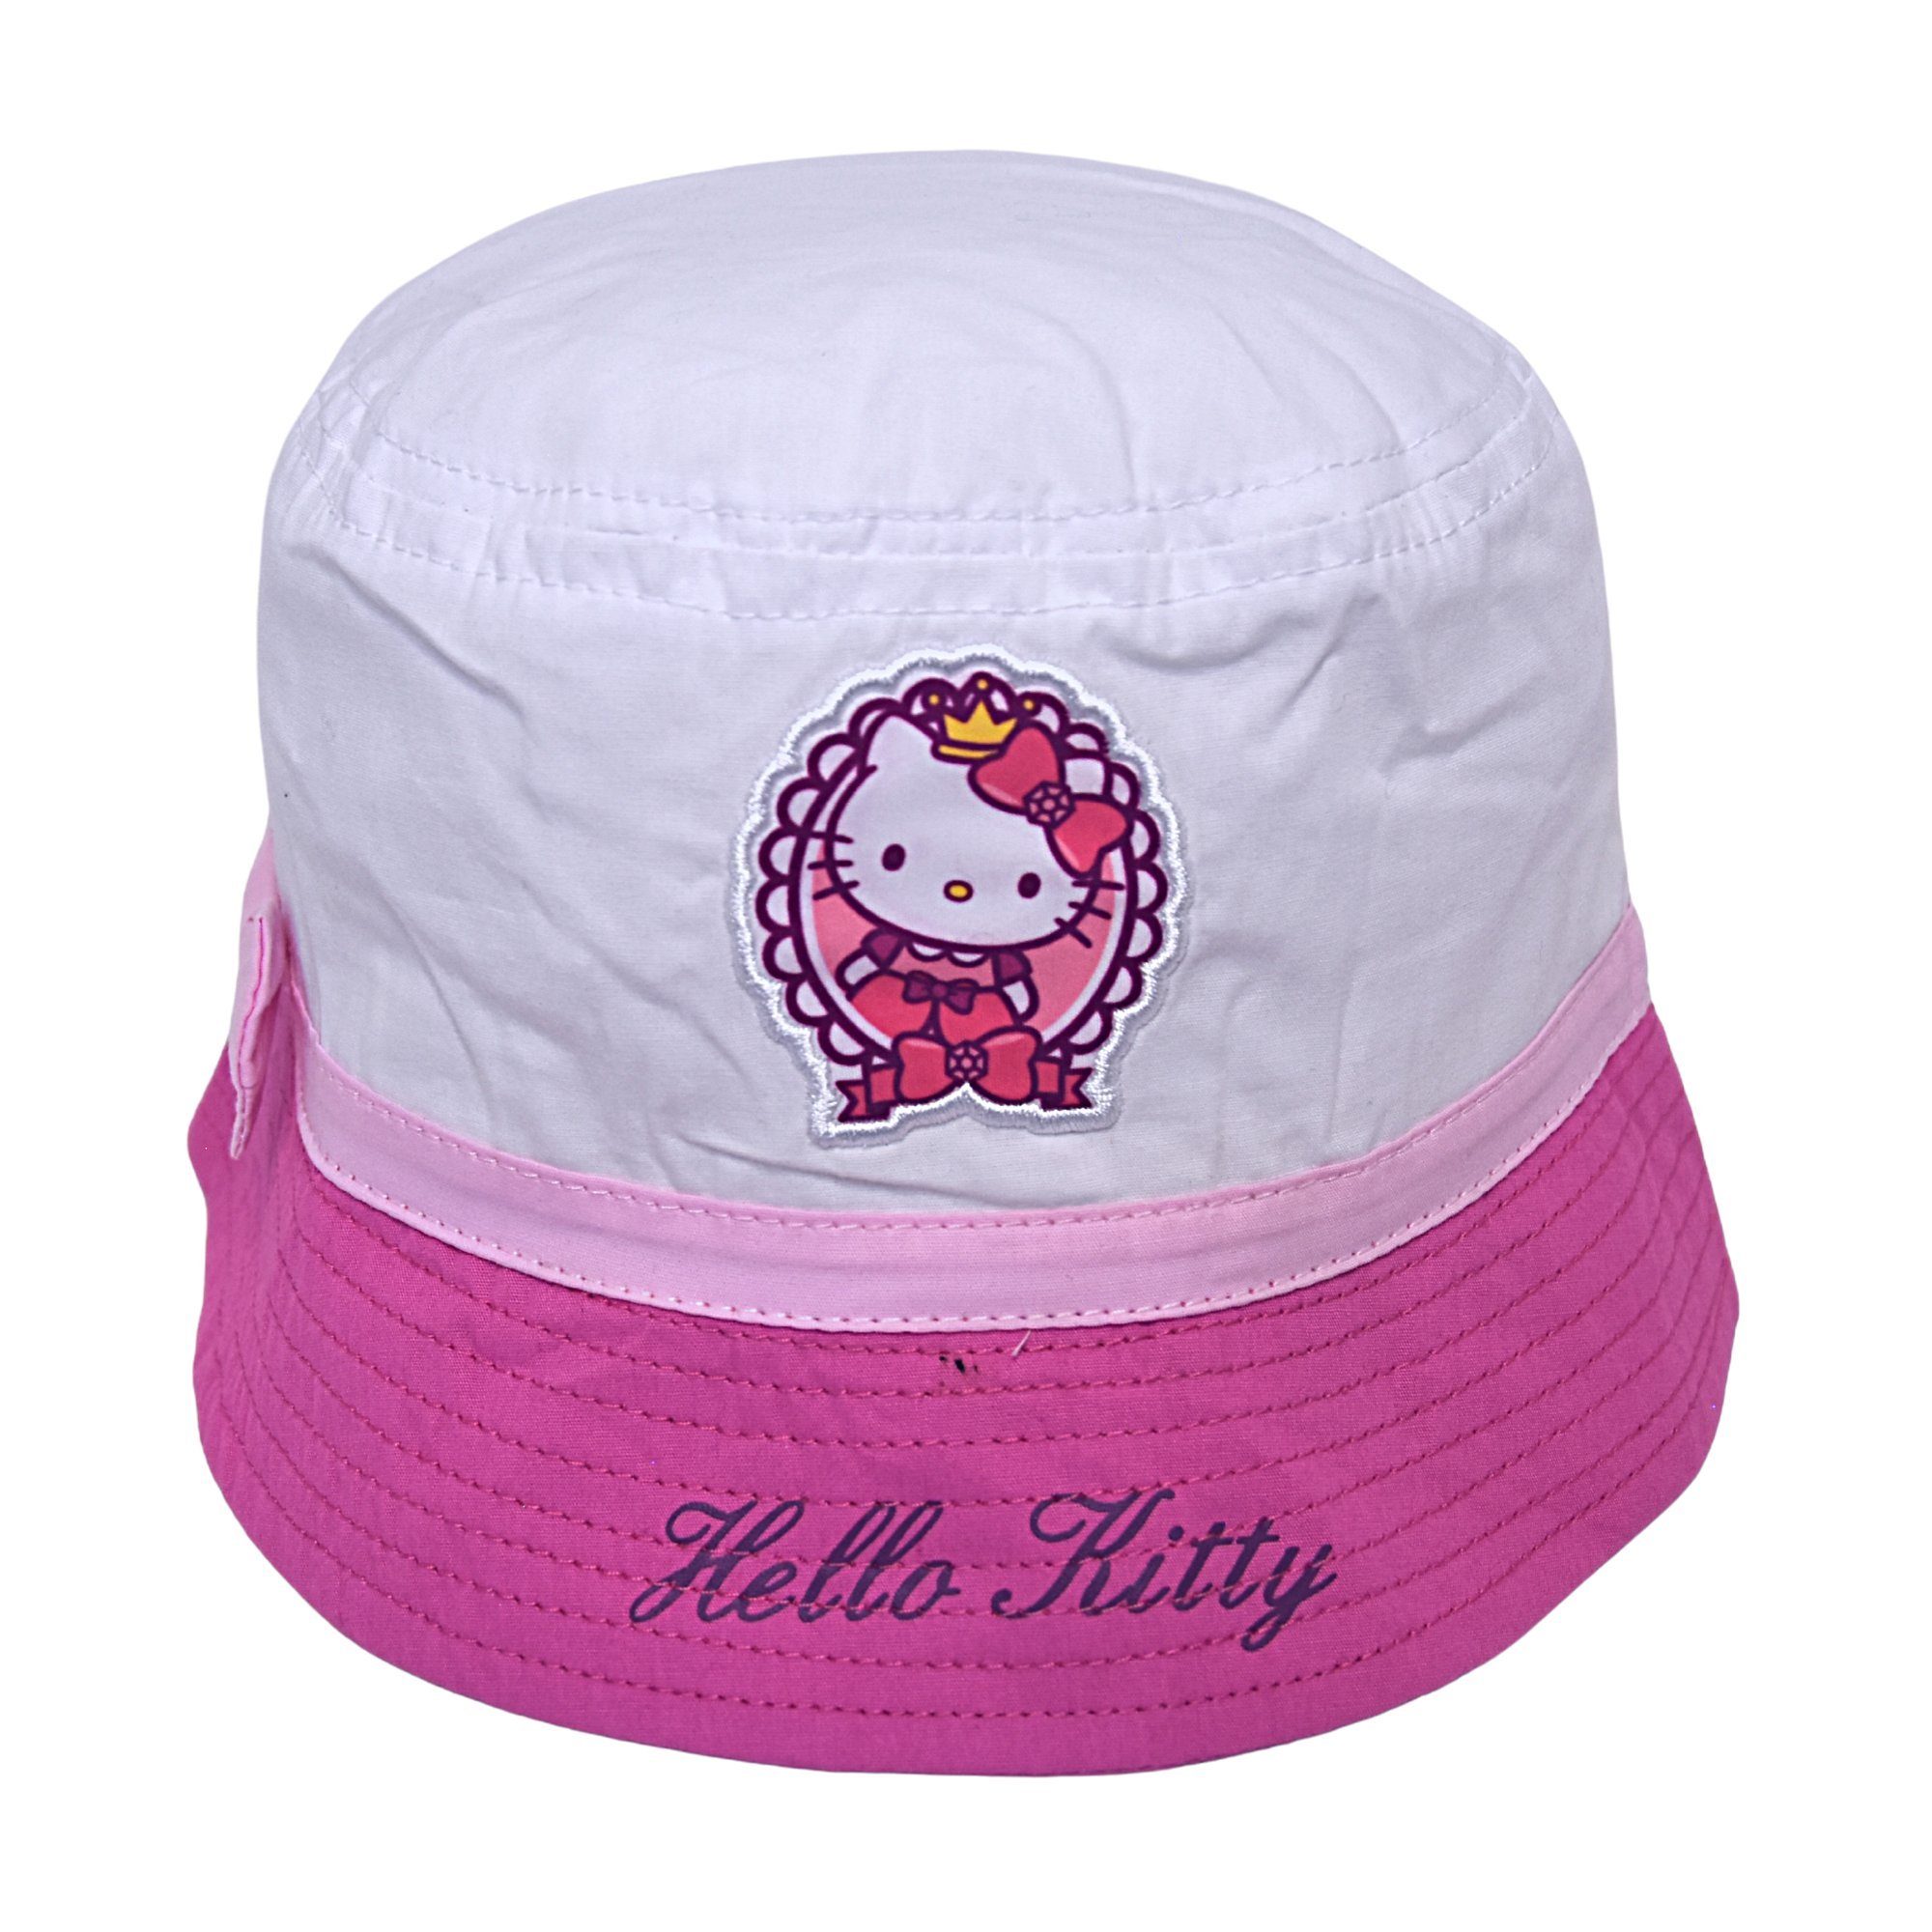 Hello Kitty Fischerhut Kinder Bucket Hut cm 52-54 Größe Weiß